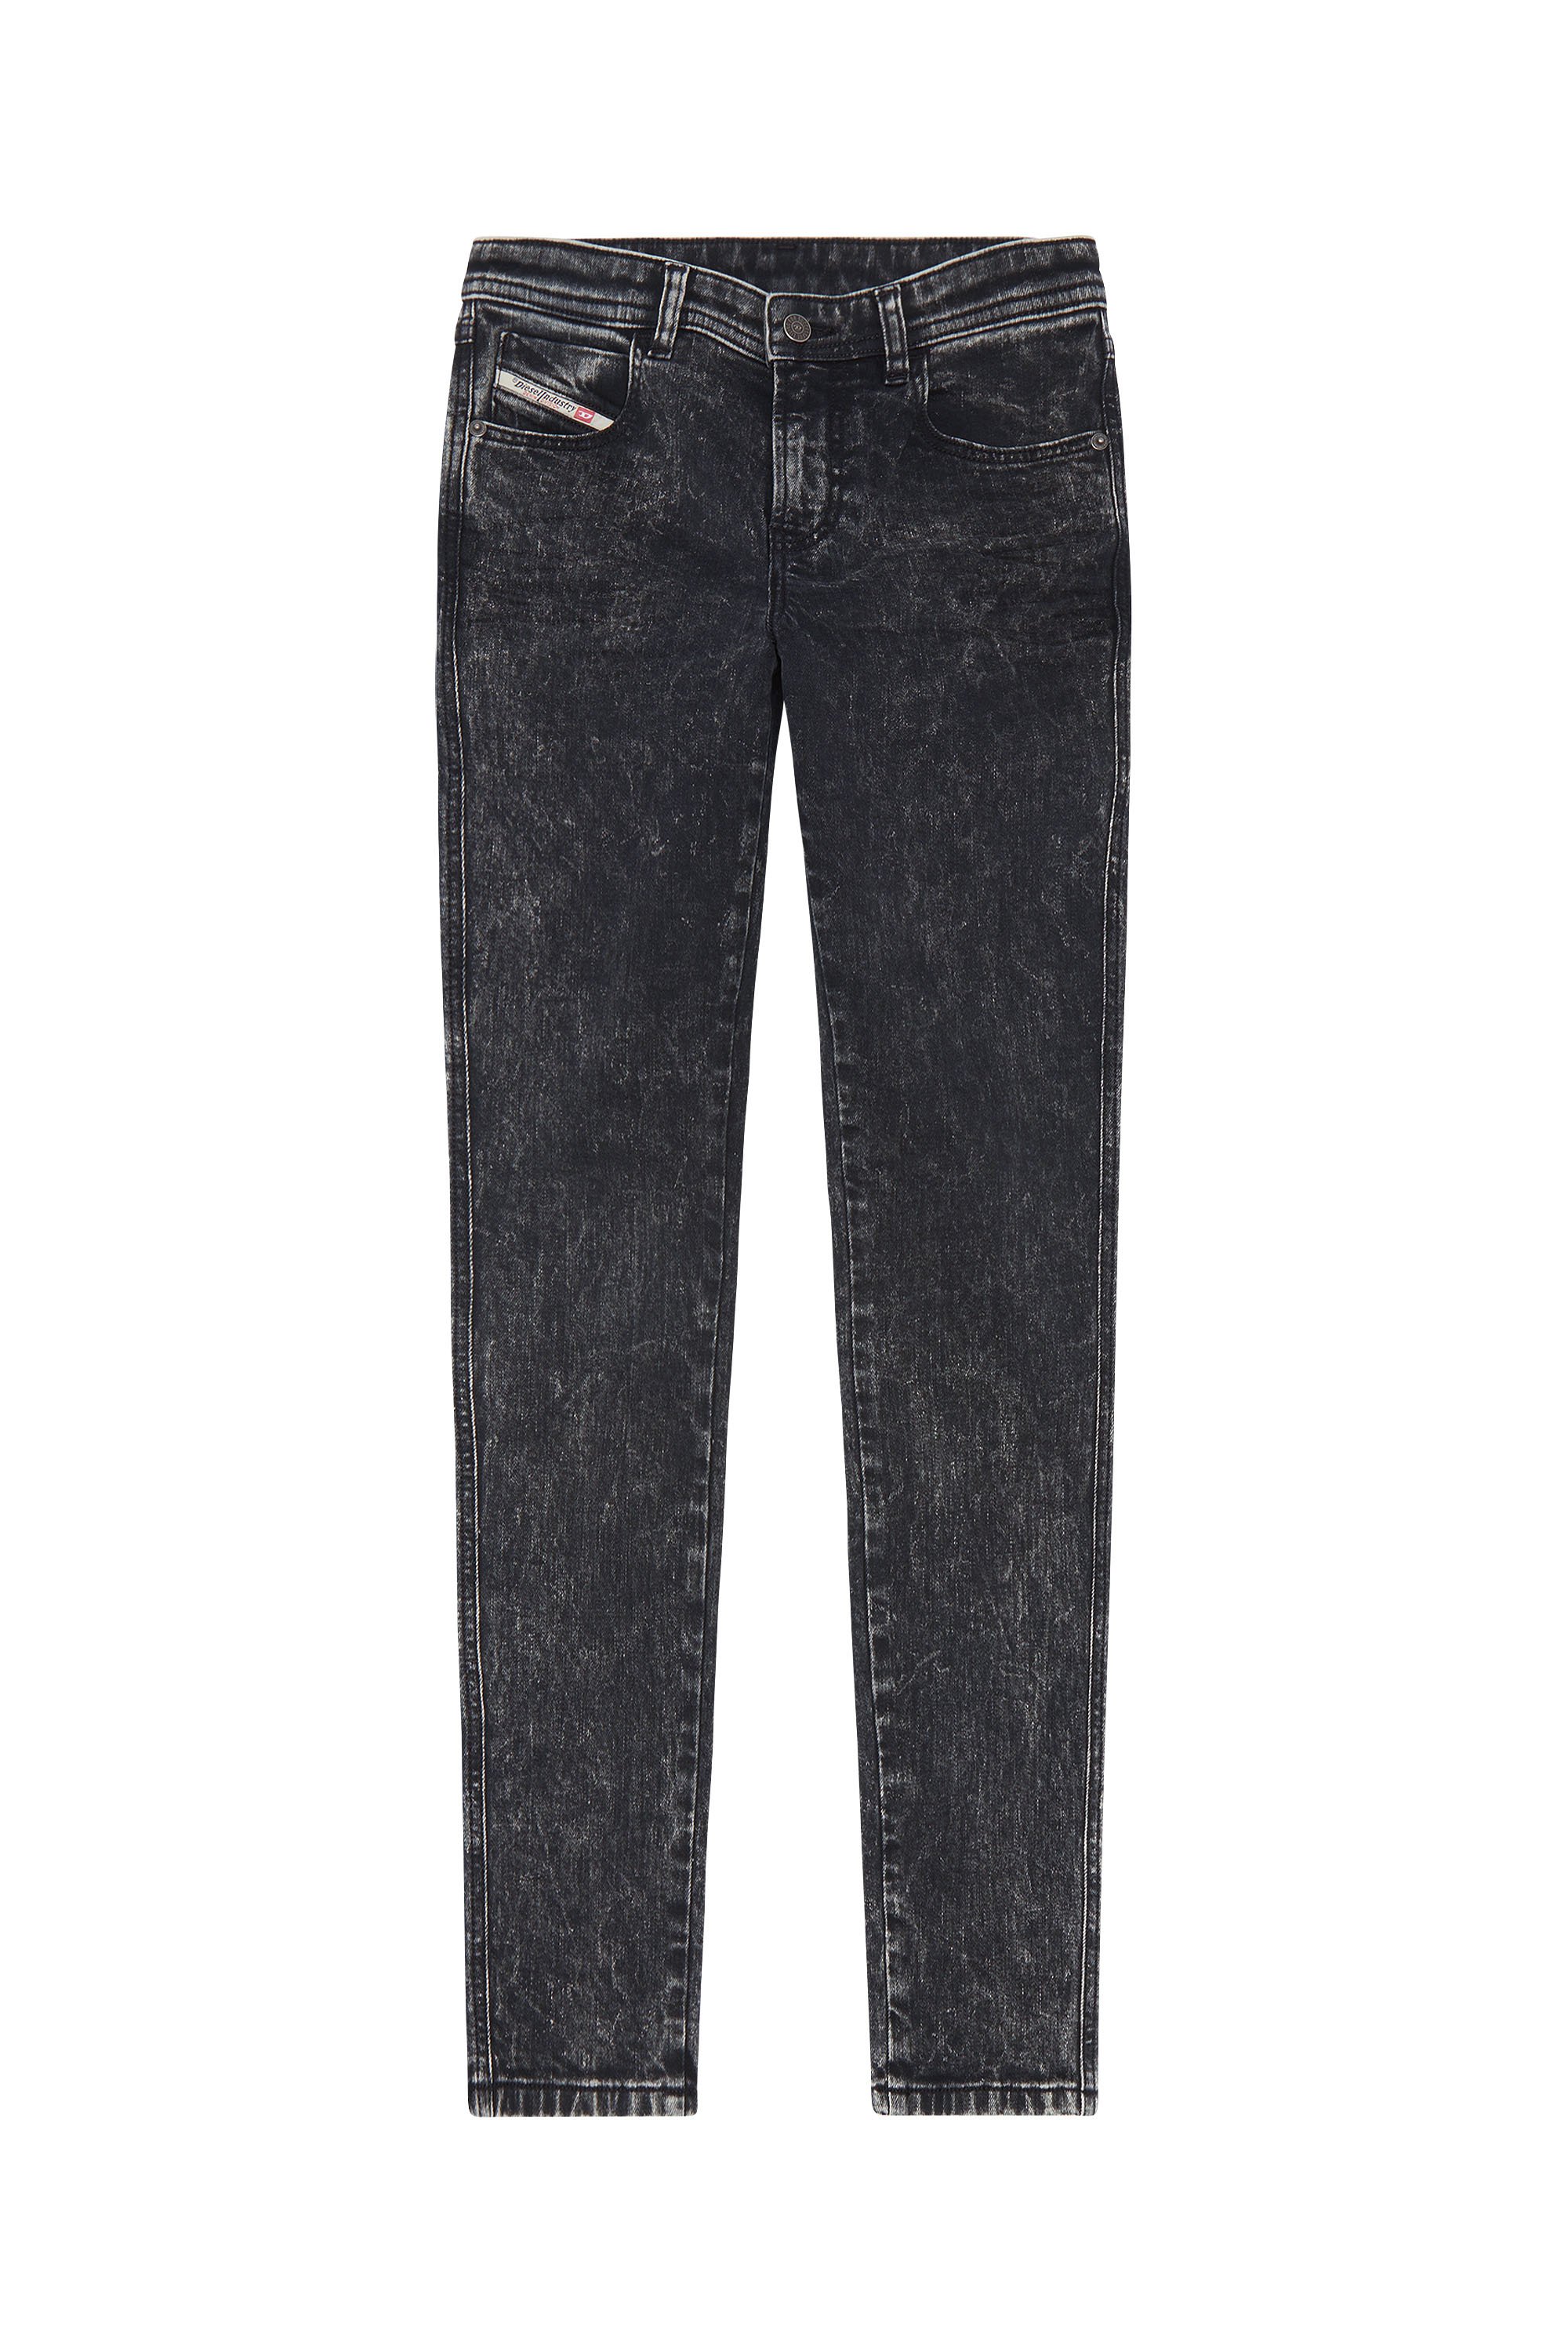 Diesel - Skinny Jeans 2015 Babhila 0ENAN, Black/Dark grey - Image 1